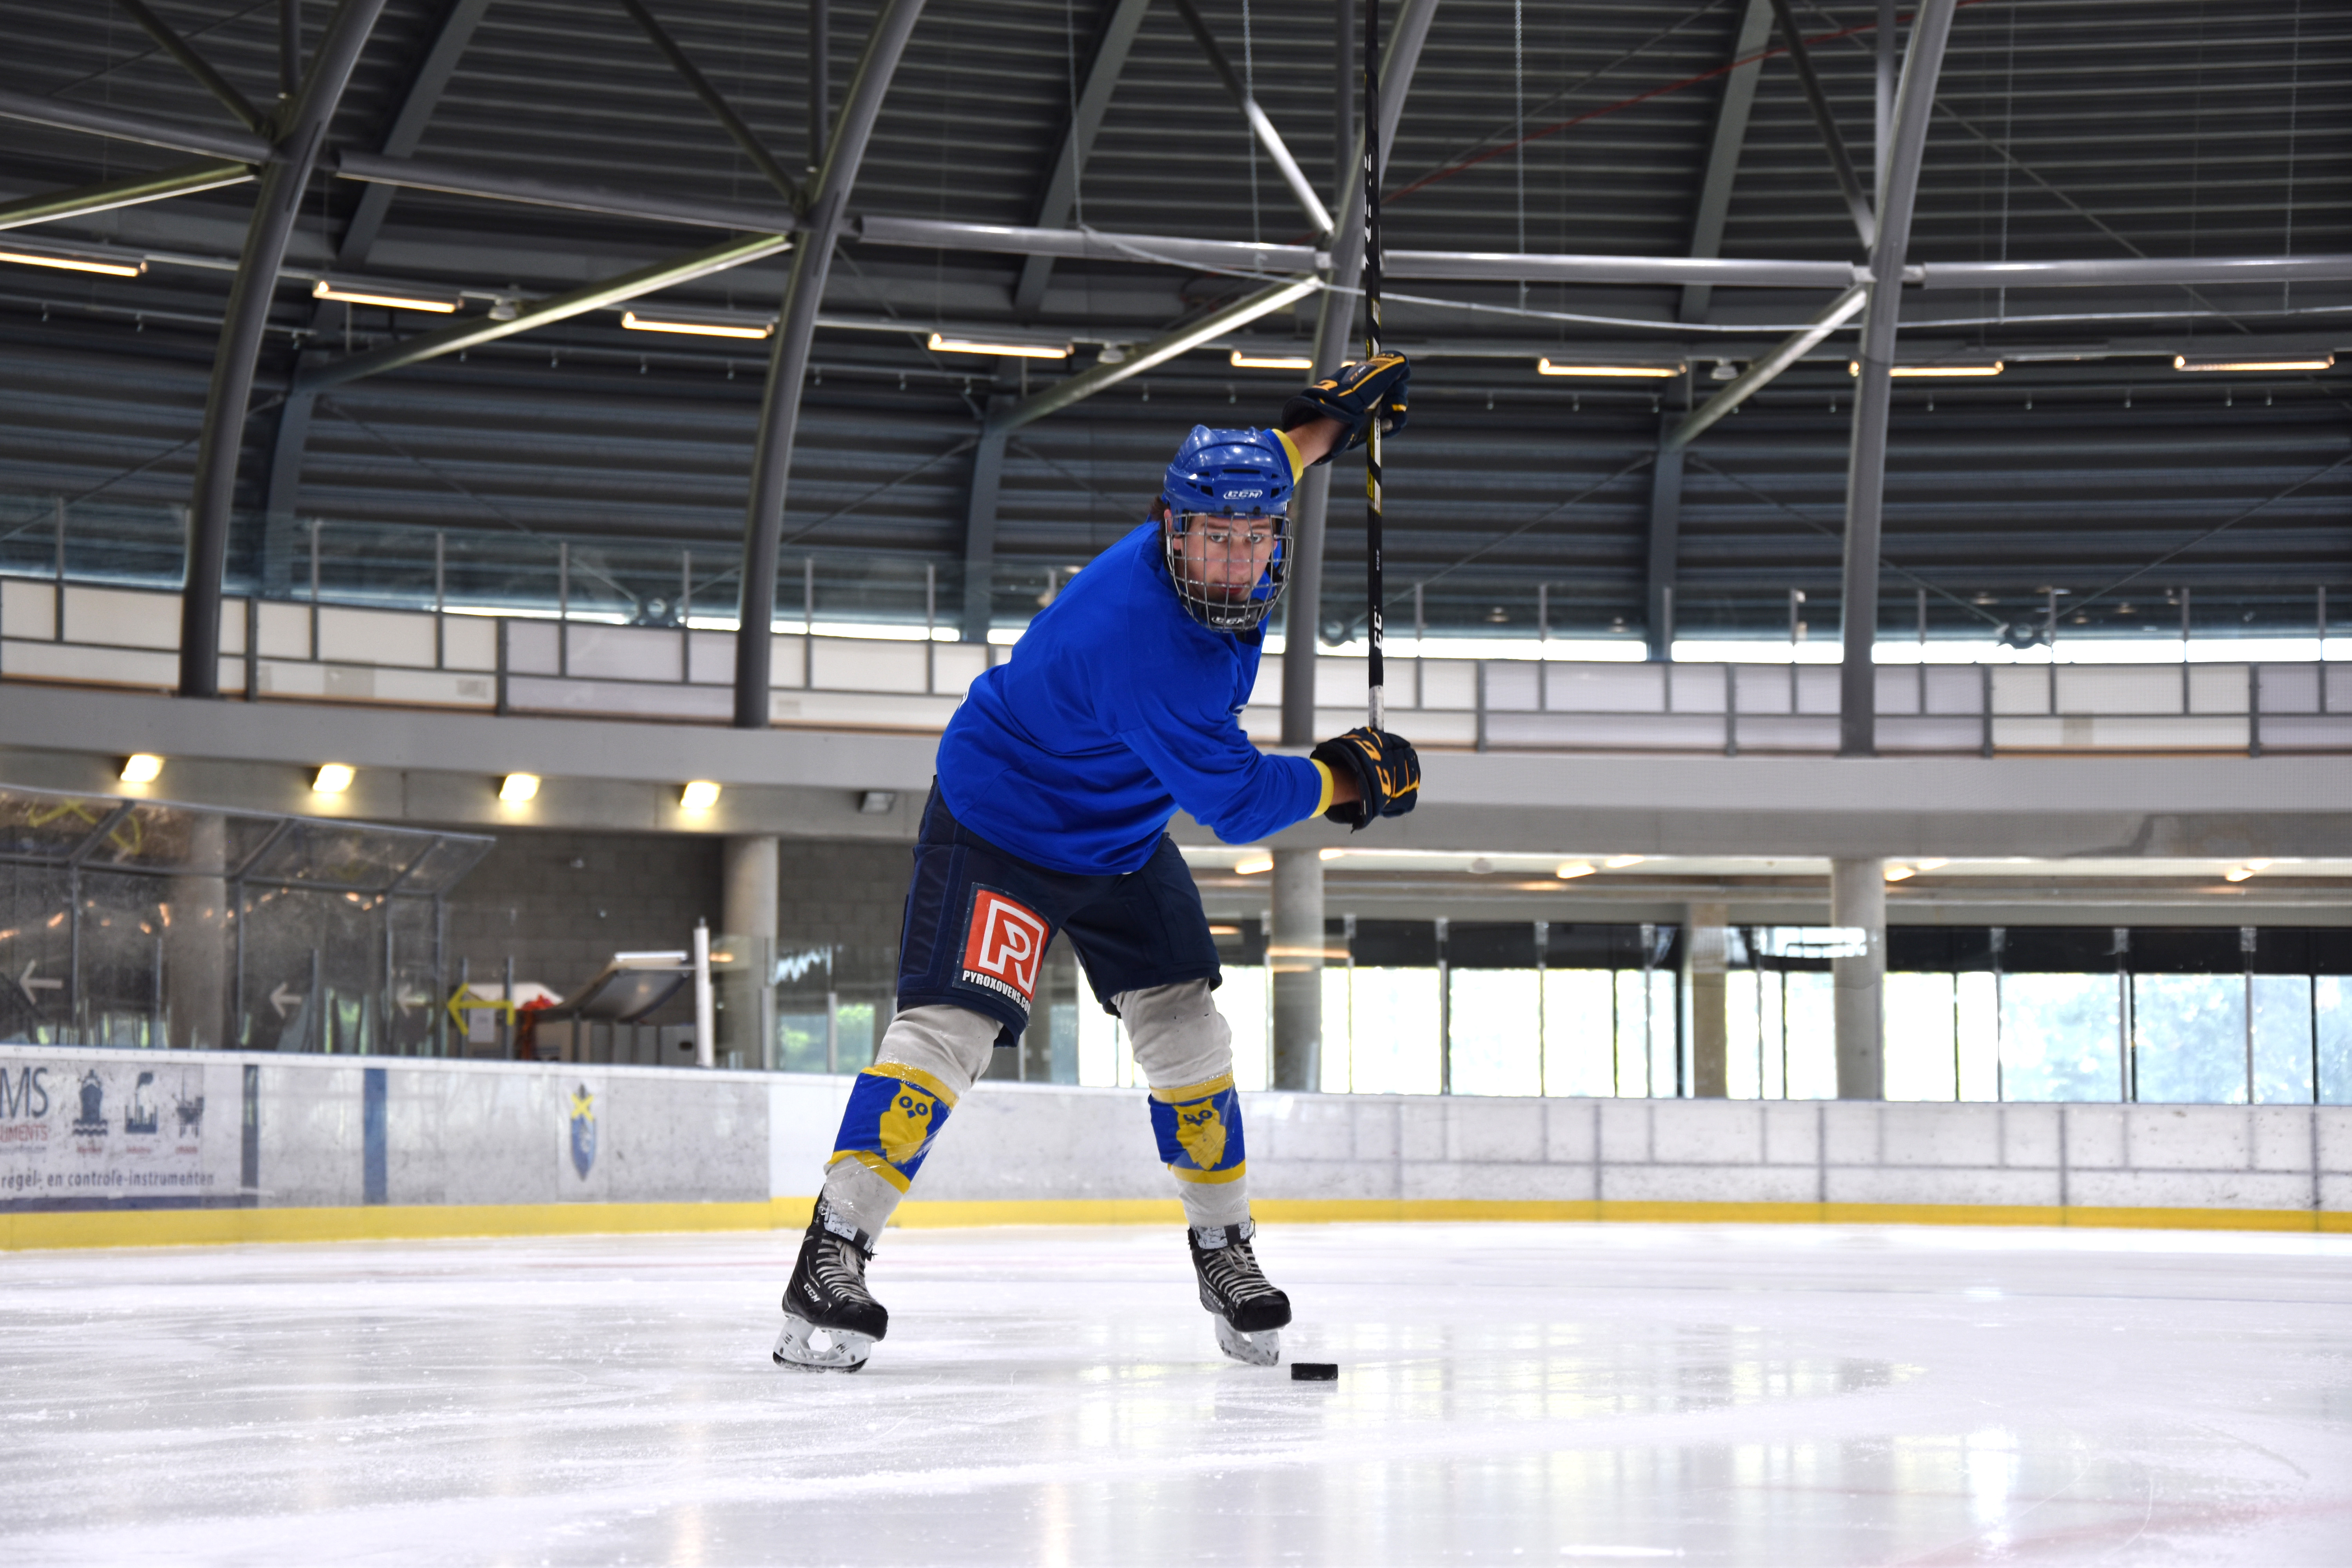 Leer ijshockey spelen bij Optisport Dordrecht. Dit is op de ijsbaan waar je kan schaatsen.